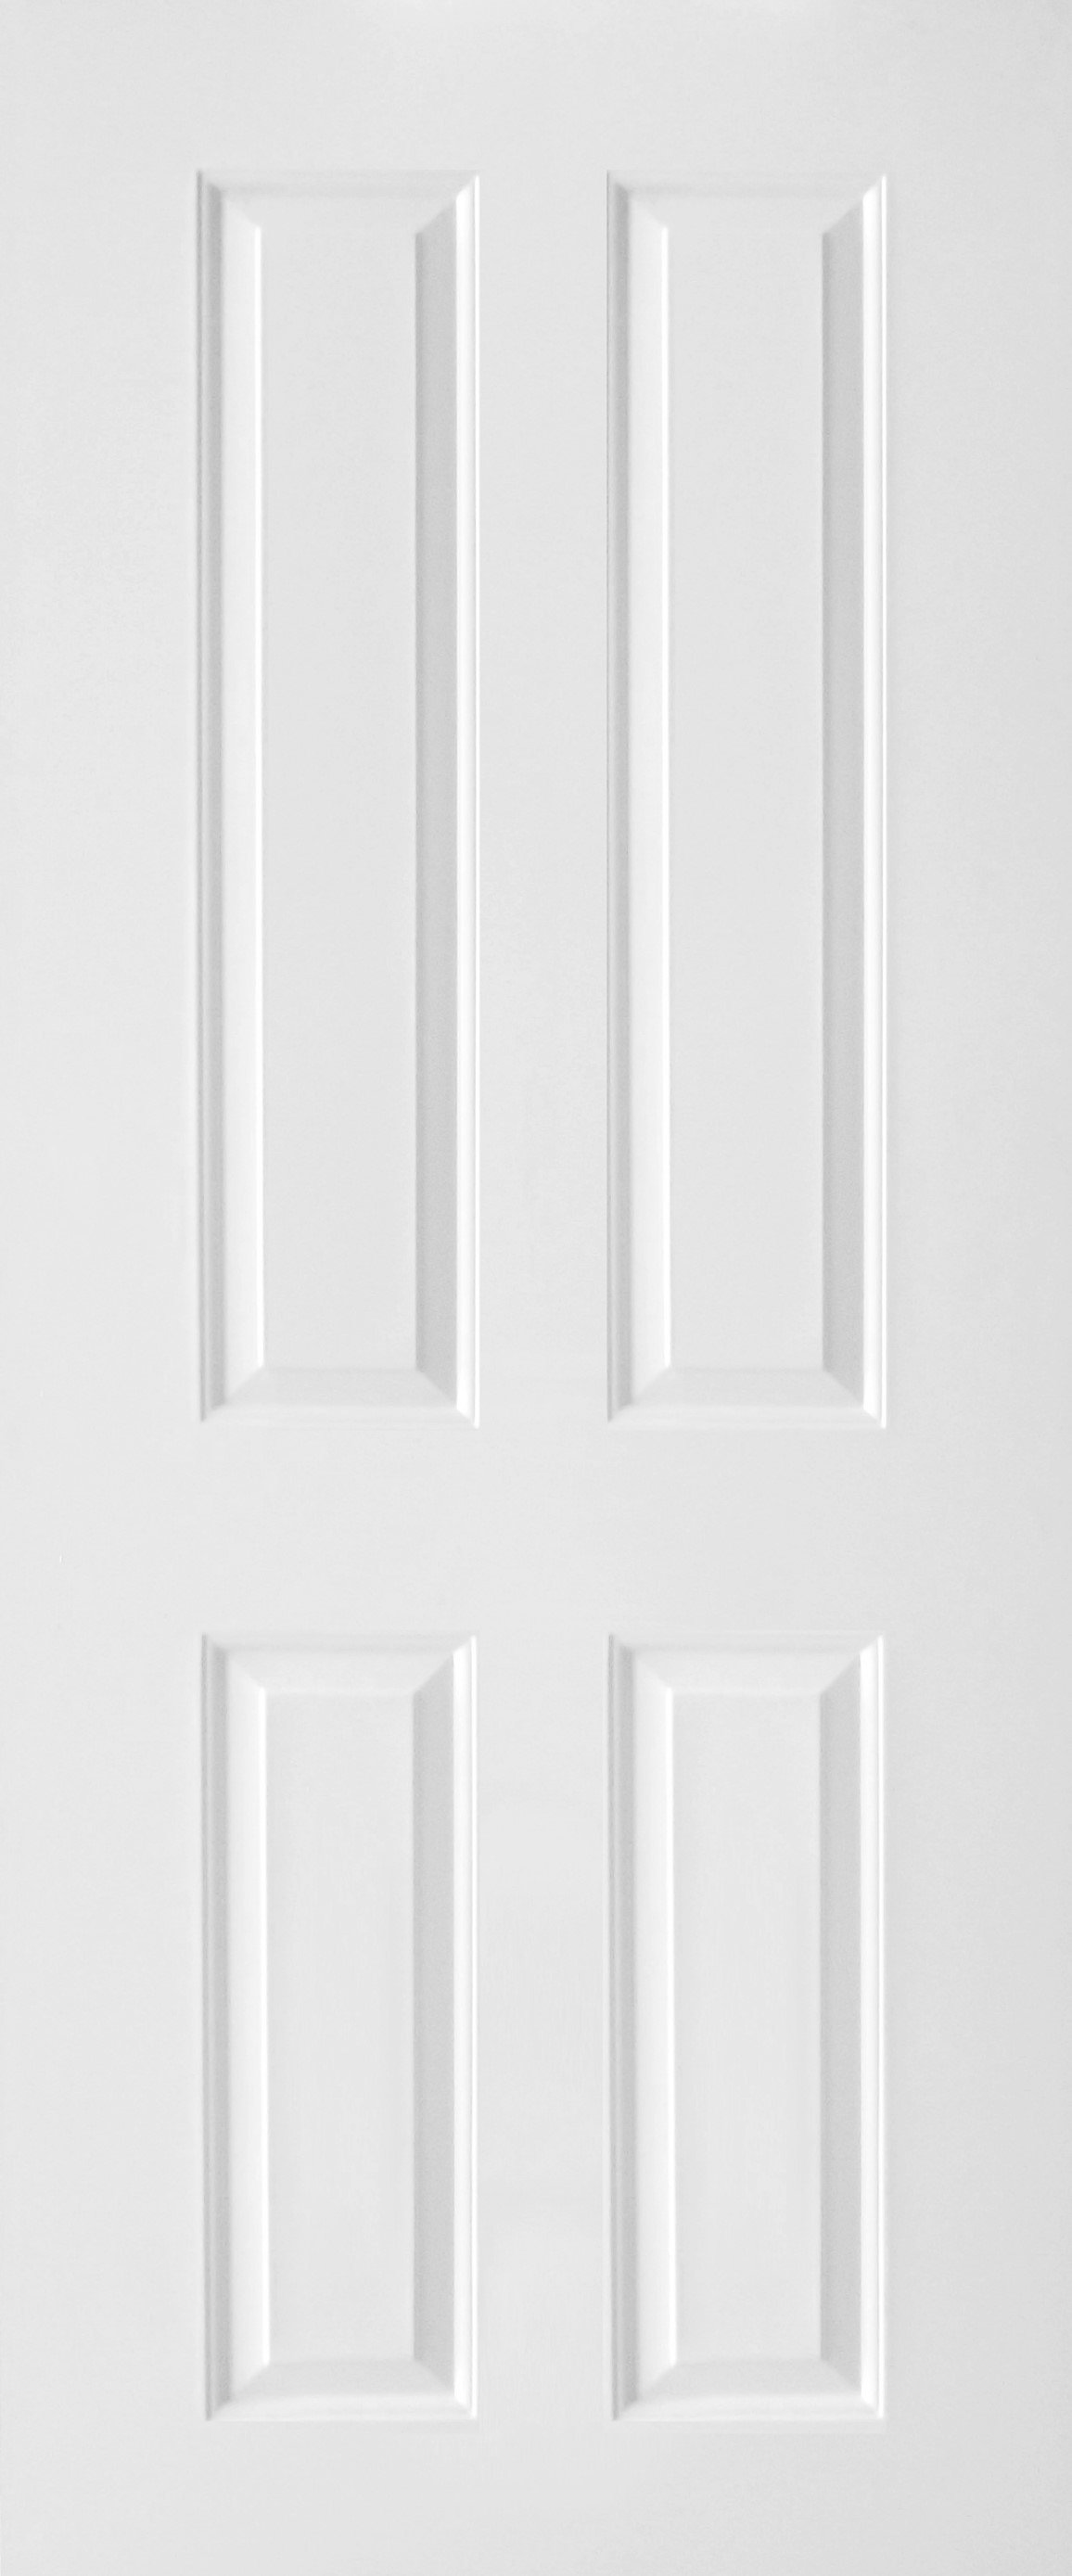 ประตูUPVC สีขาวลายไม้ บานลูกฟัก 4 ช่องตรง